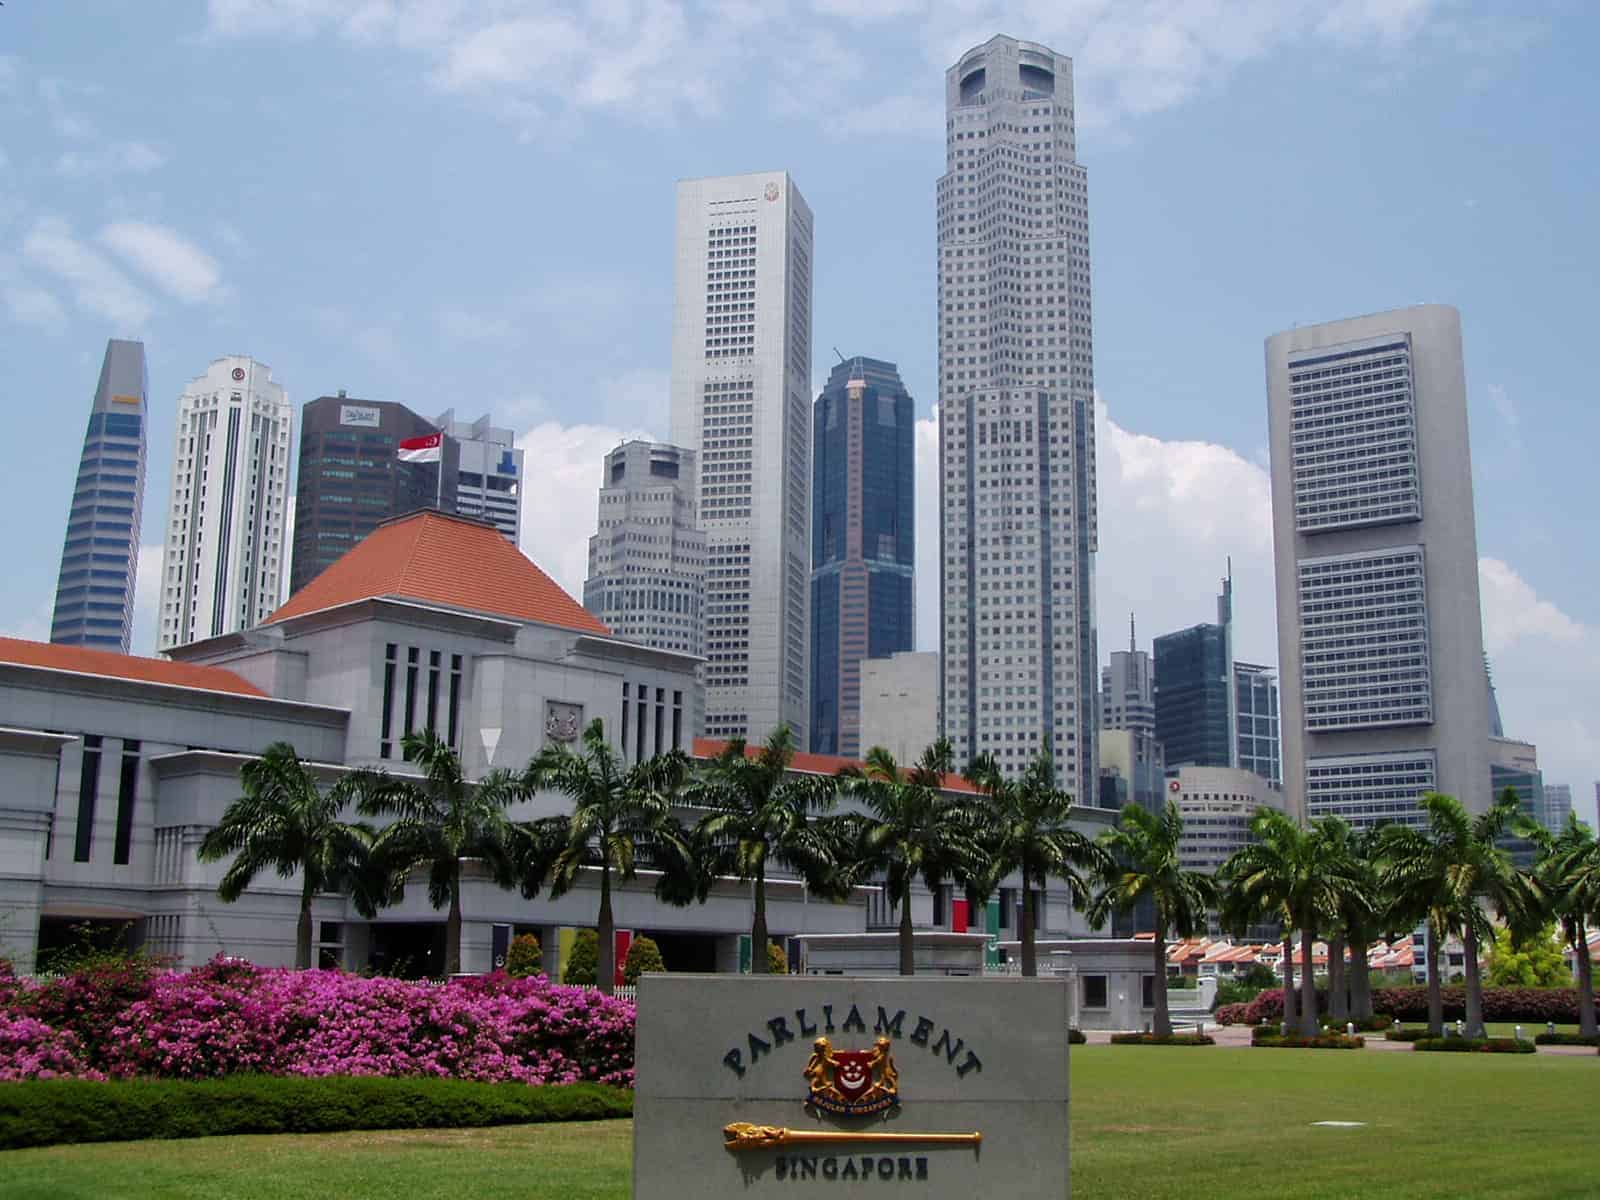 Singapore parliament